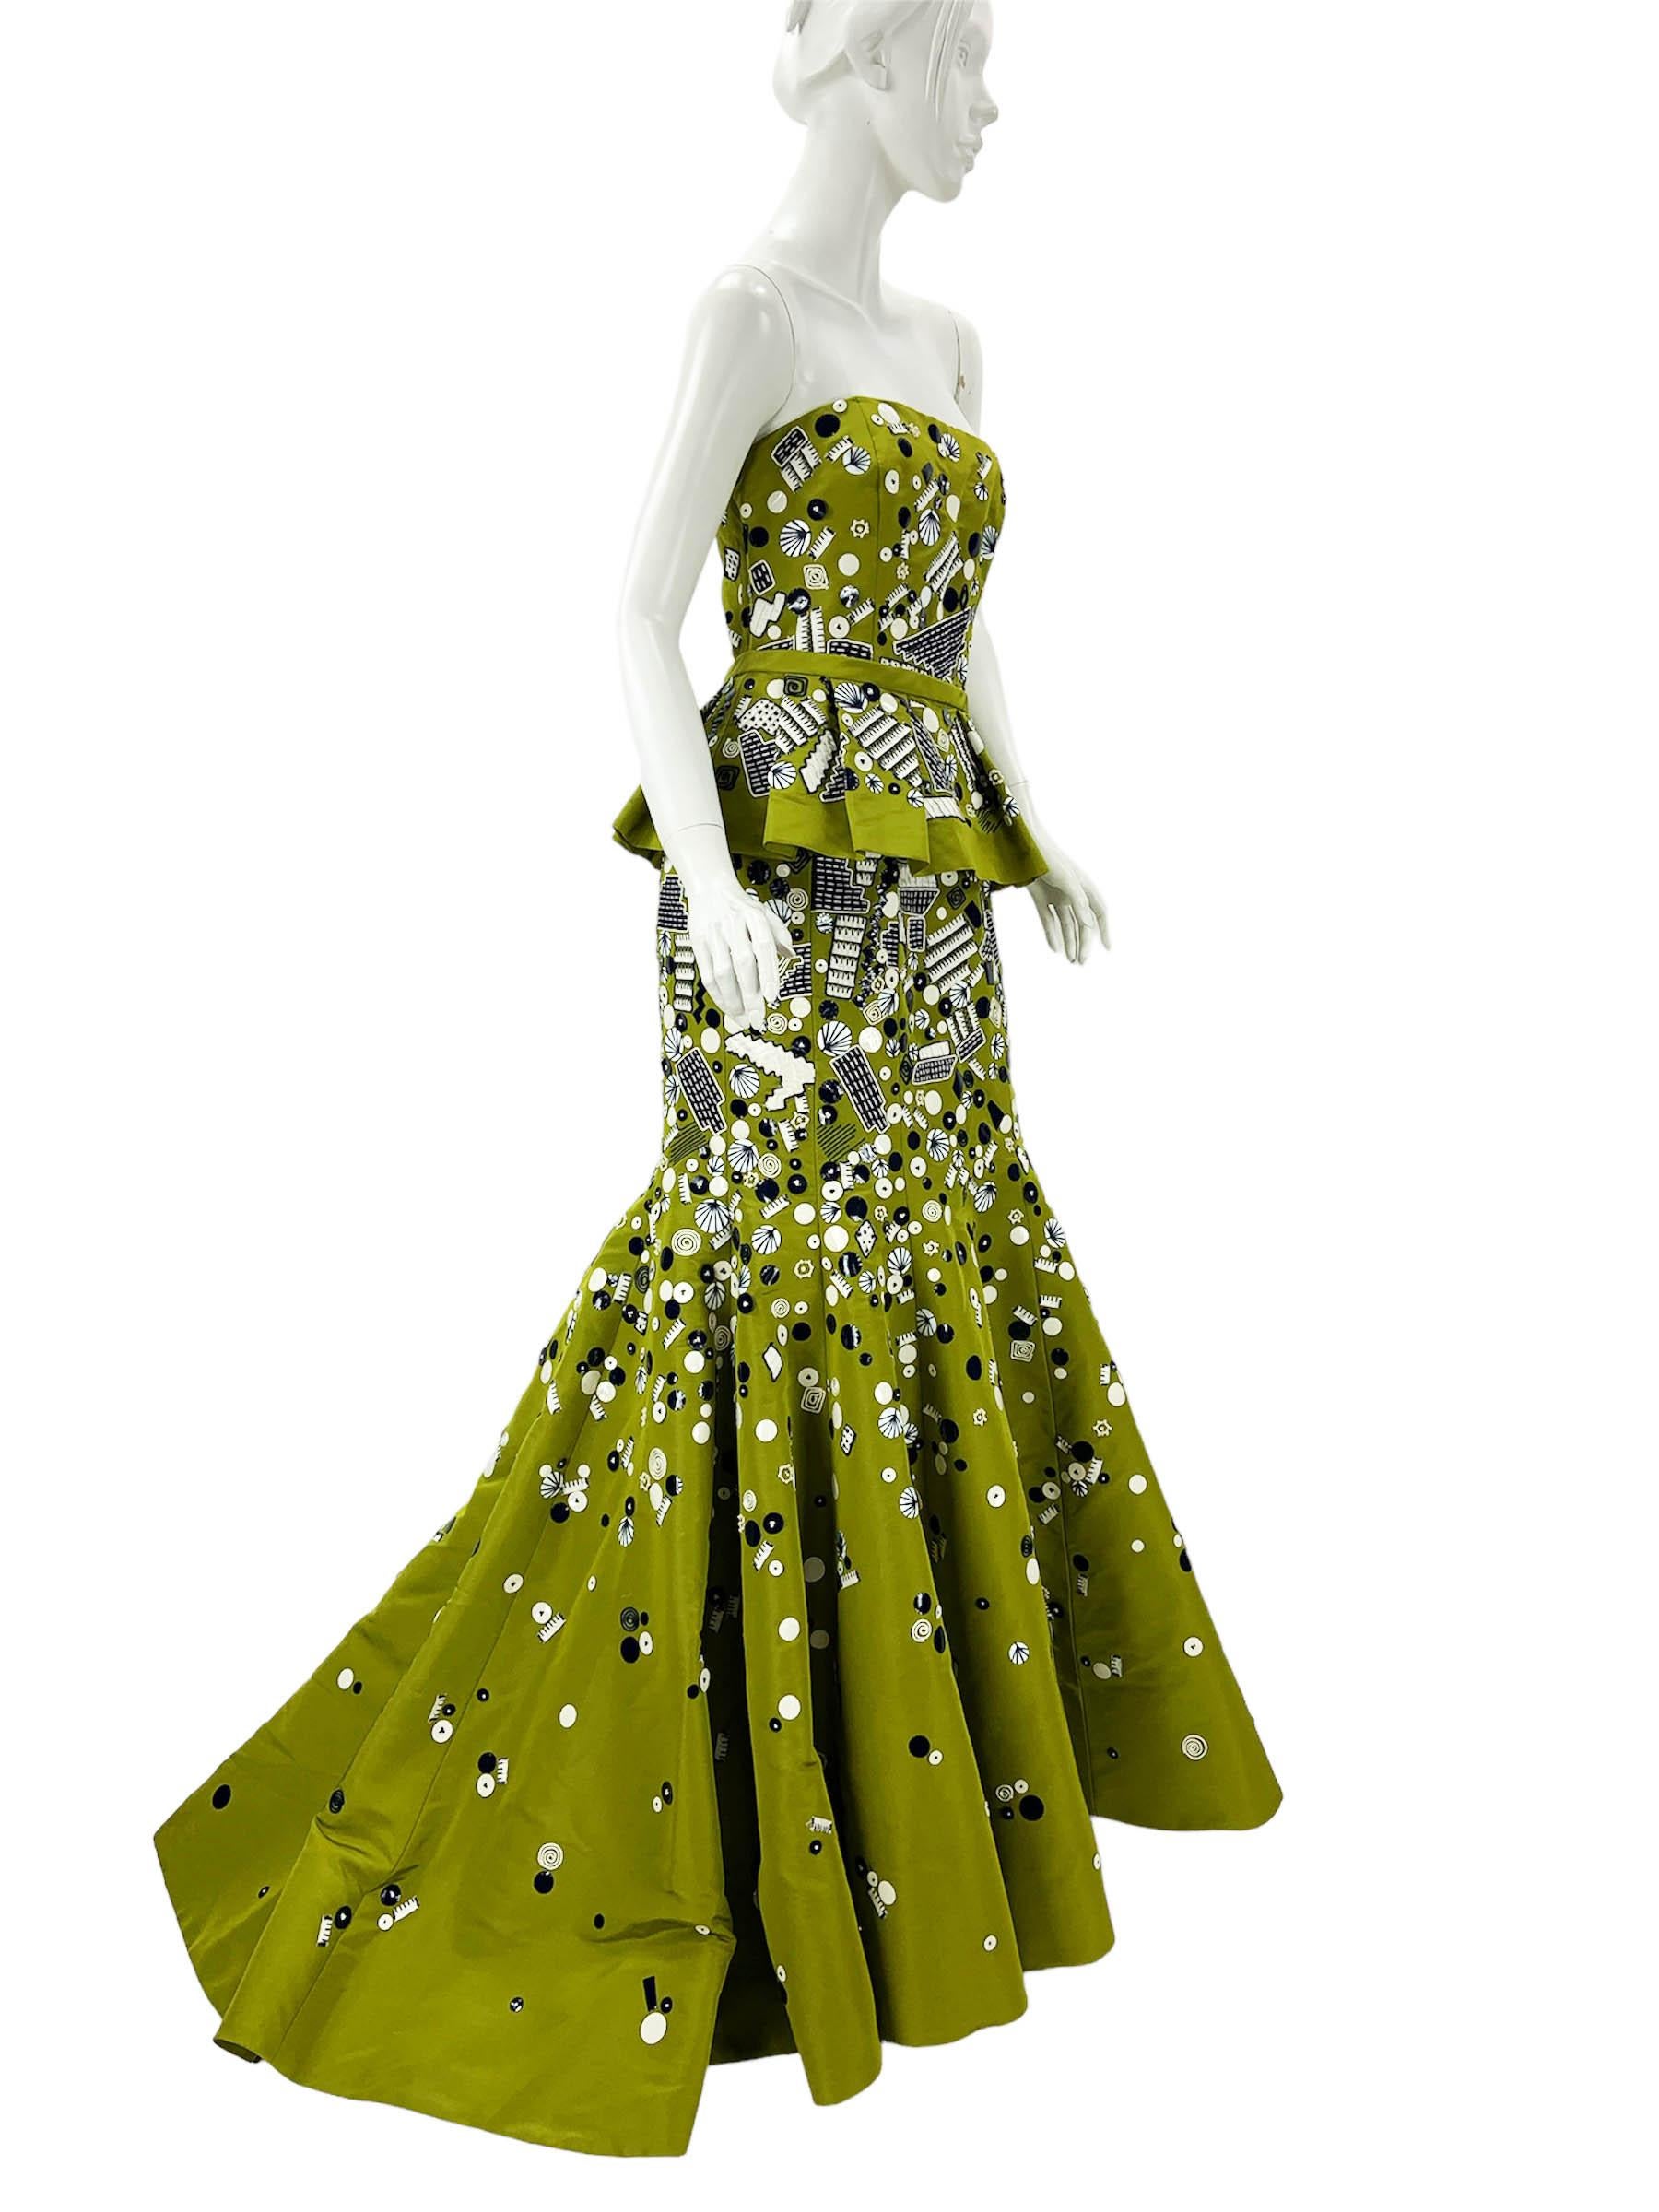 NWT Oscar de la Renta Grün verschönert Seide Taft Peplum Kleid Kleid
Dieses trägerlose Kleid verkörpert mühelos die Facetten von zeitloser Mode und Anmut. 
S/S 2009 Collection'S 
US-Größe - 10 
Vollständig verschönert und bestickt, abnehmbarer